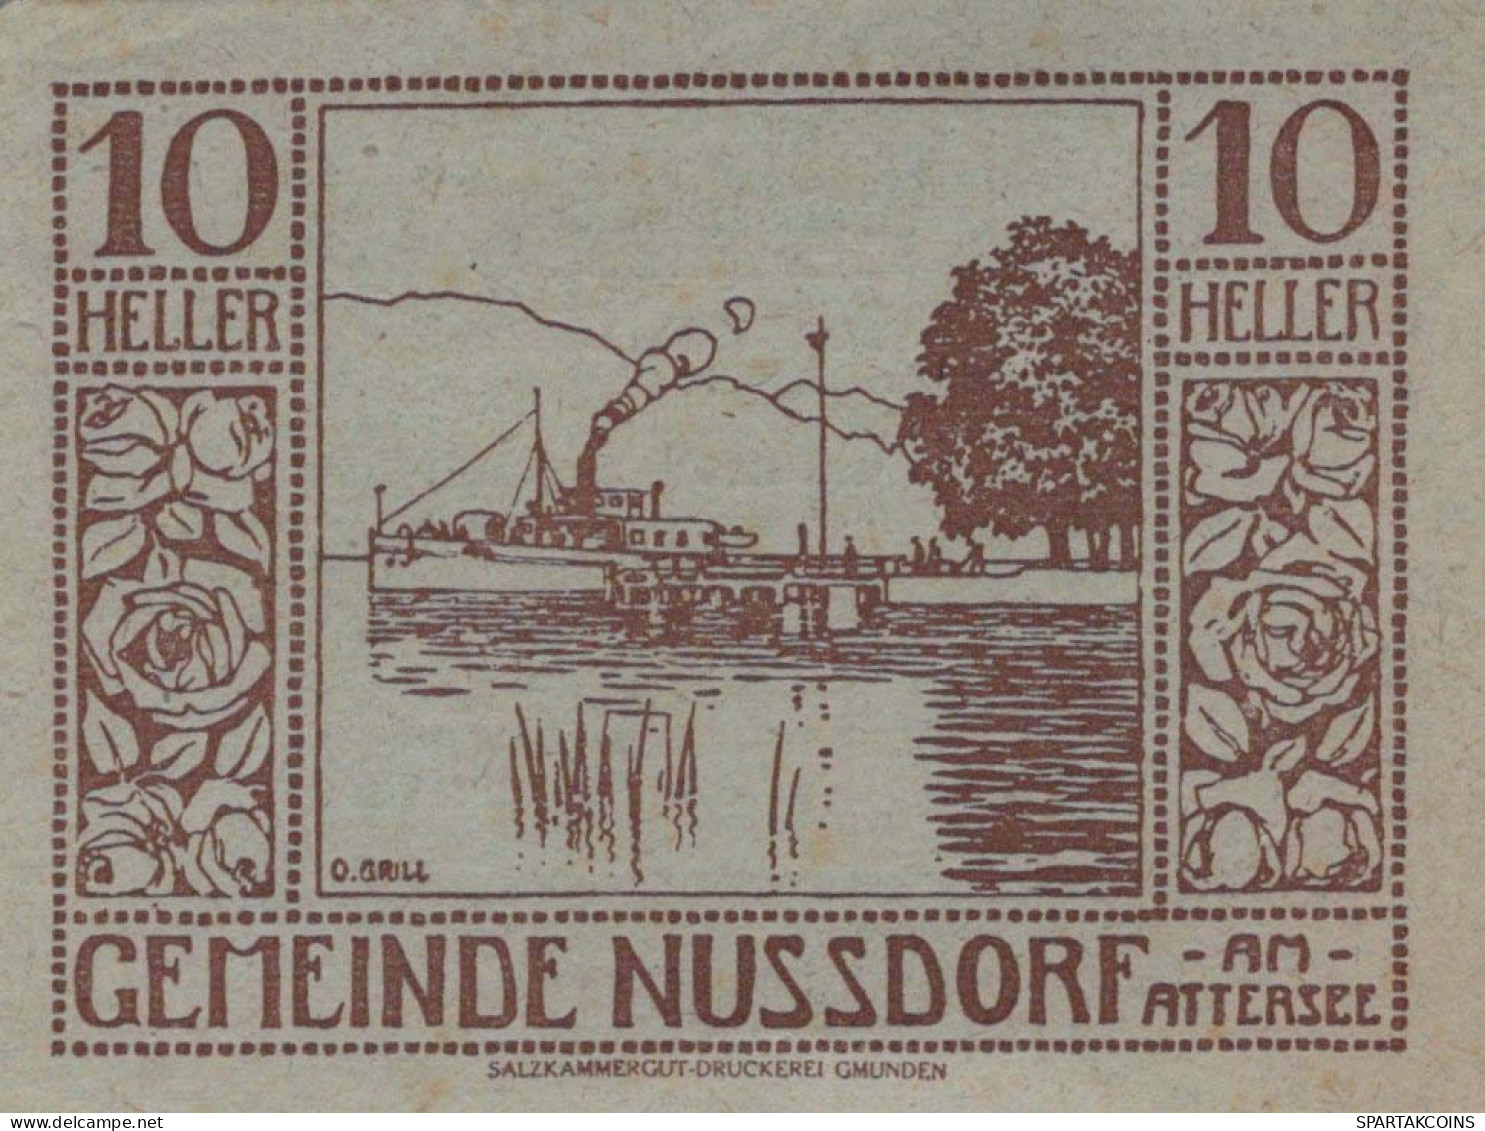 10 HELLER 1920 Stadt NUSSDORF AM ATTERSEE Oberösterreich Österreich UNC Österreich #PH410 - [11] Emissions Locales